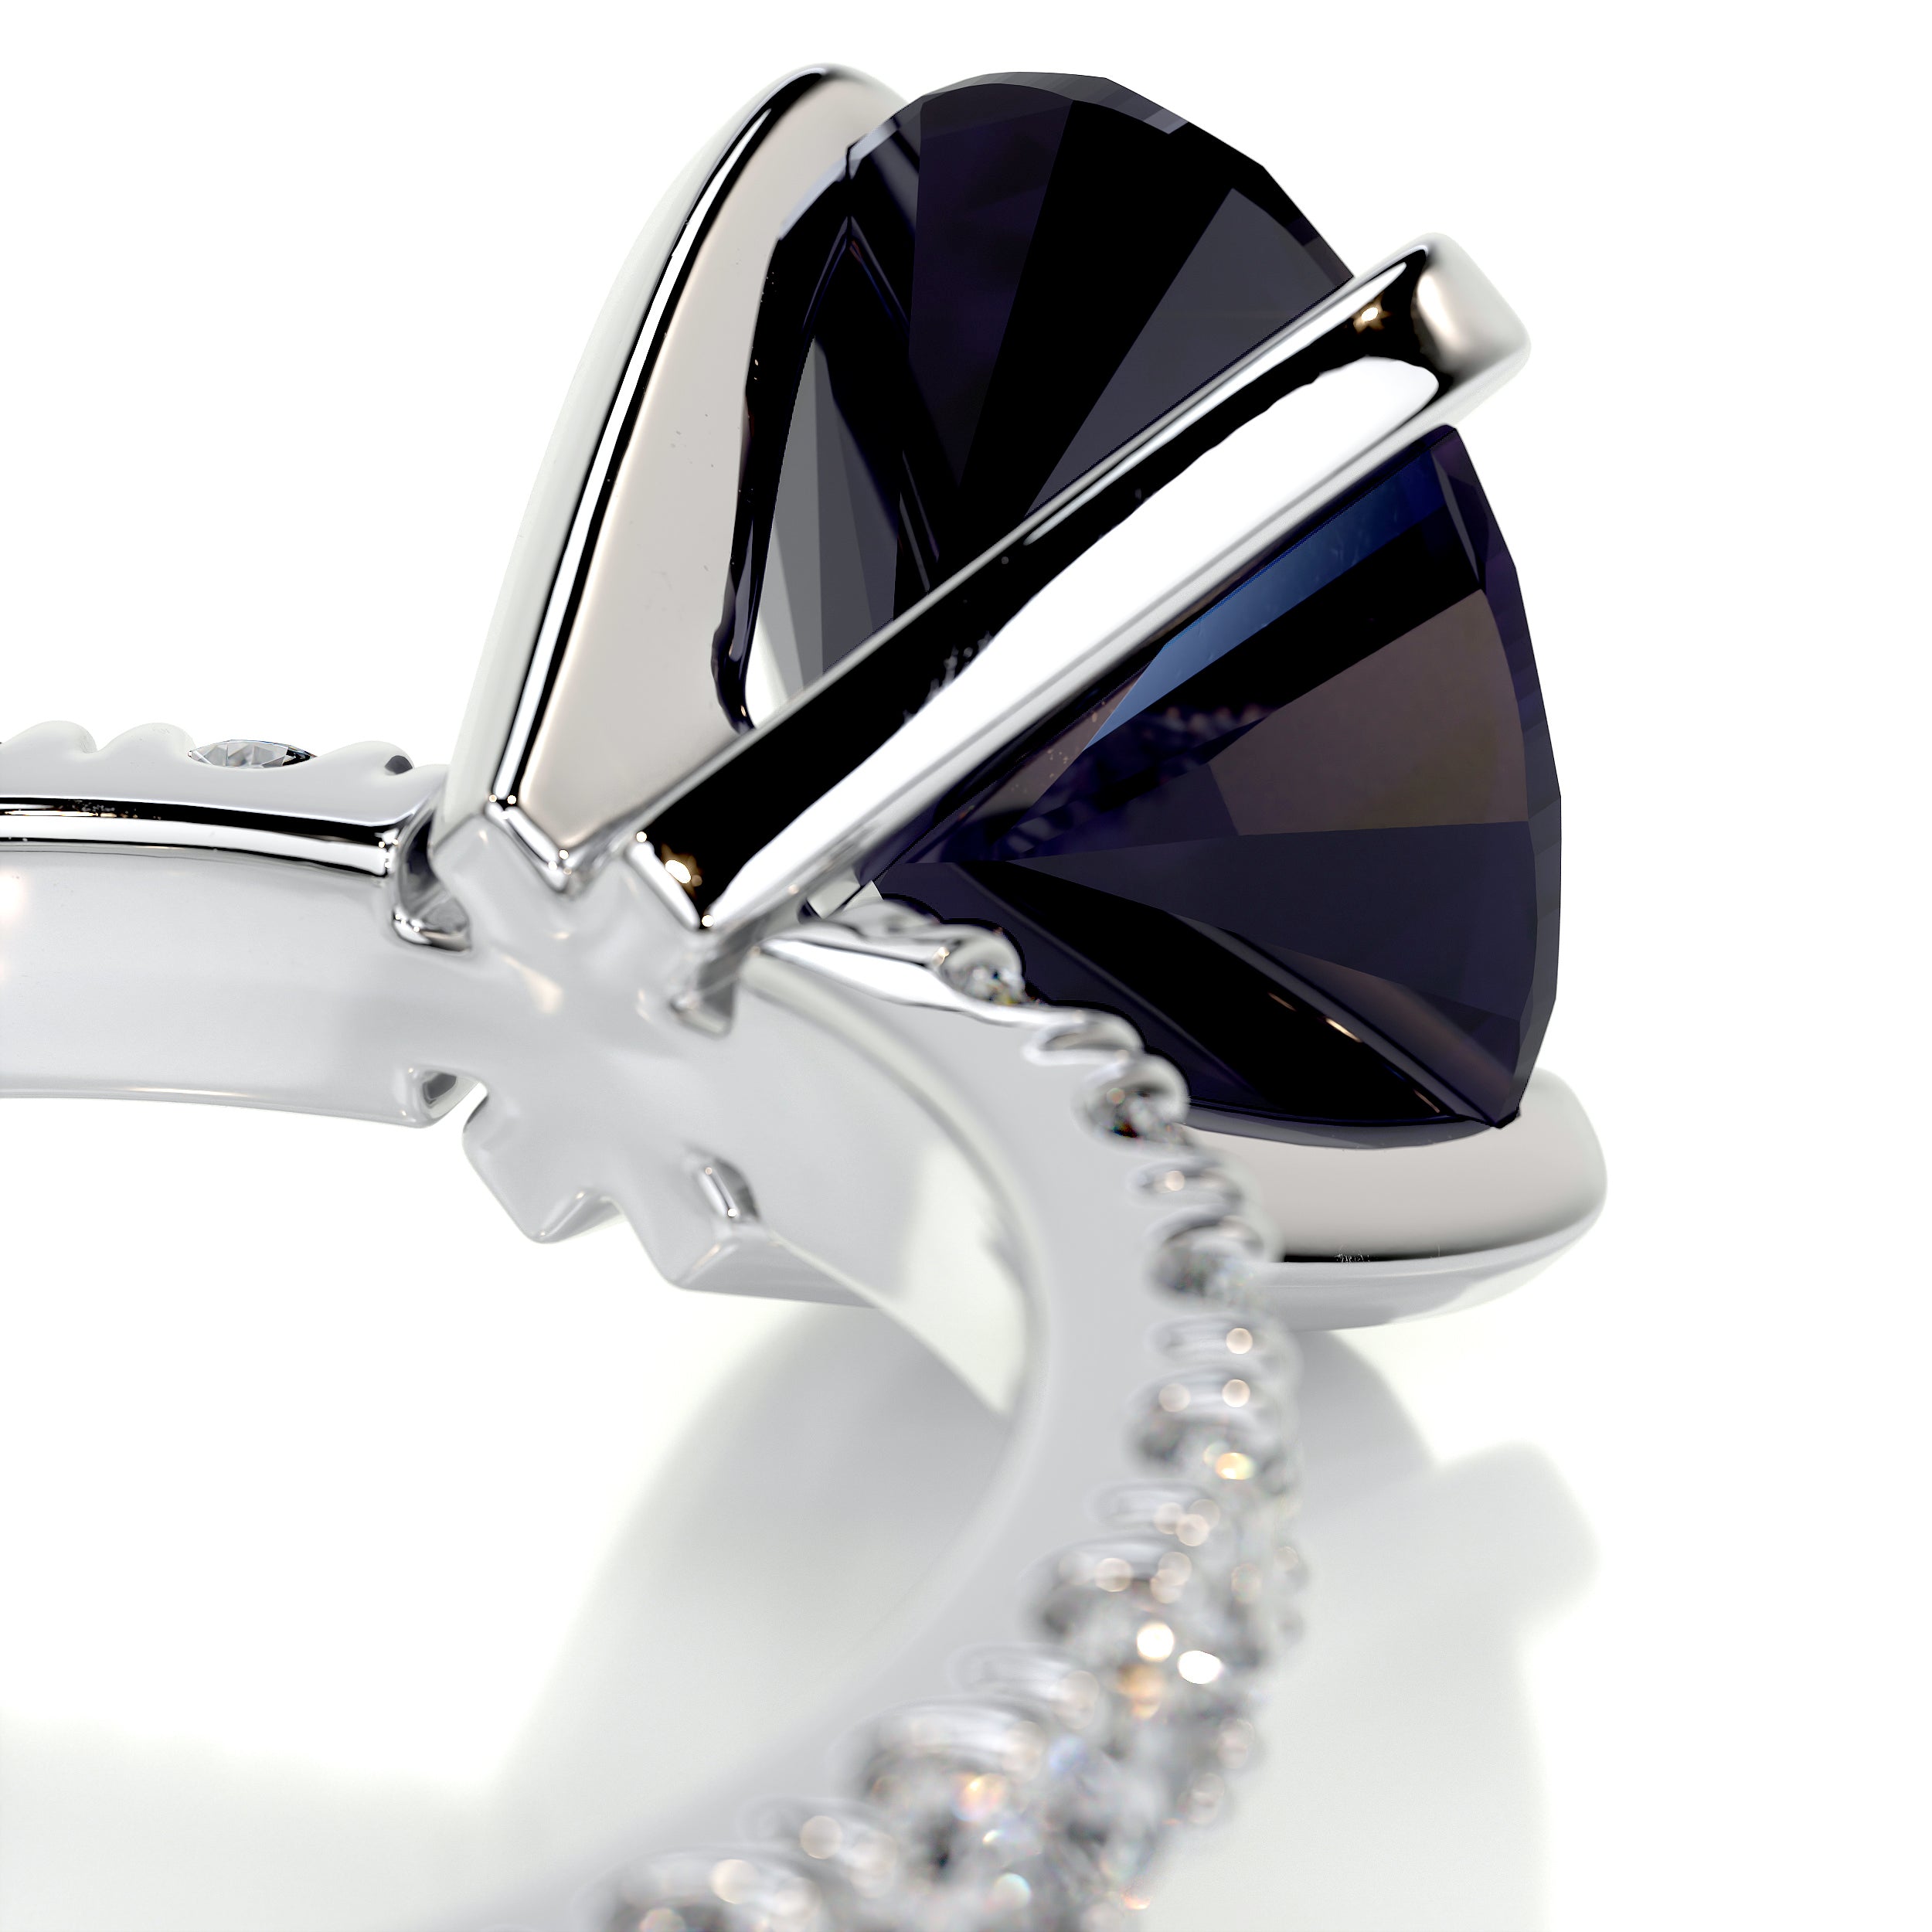 Alison Gemstone & Diamonds Ring   (3 Carat) -Platinum